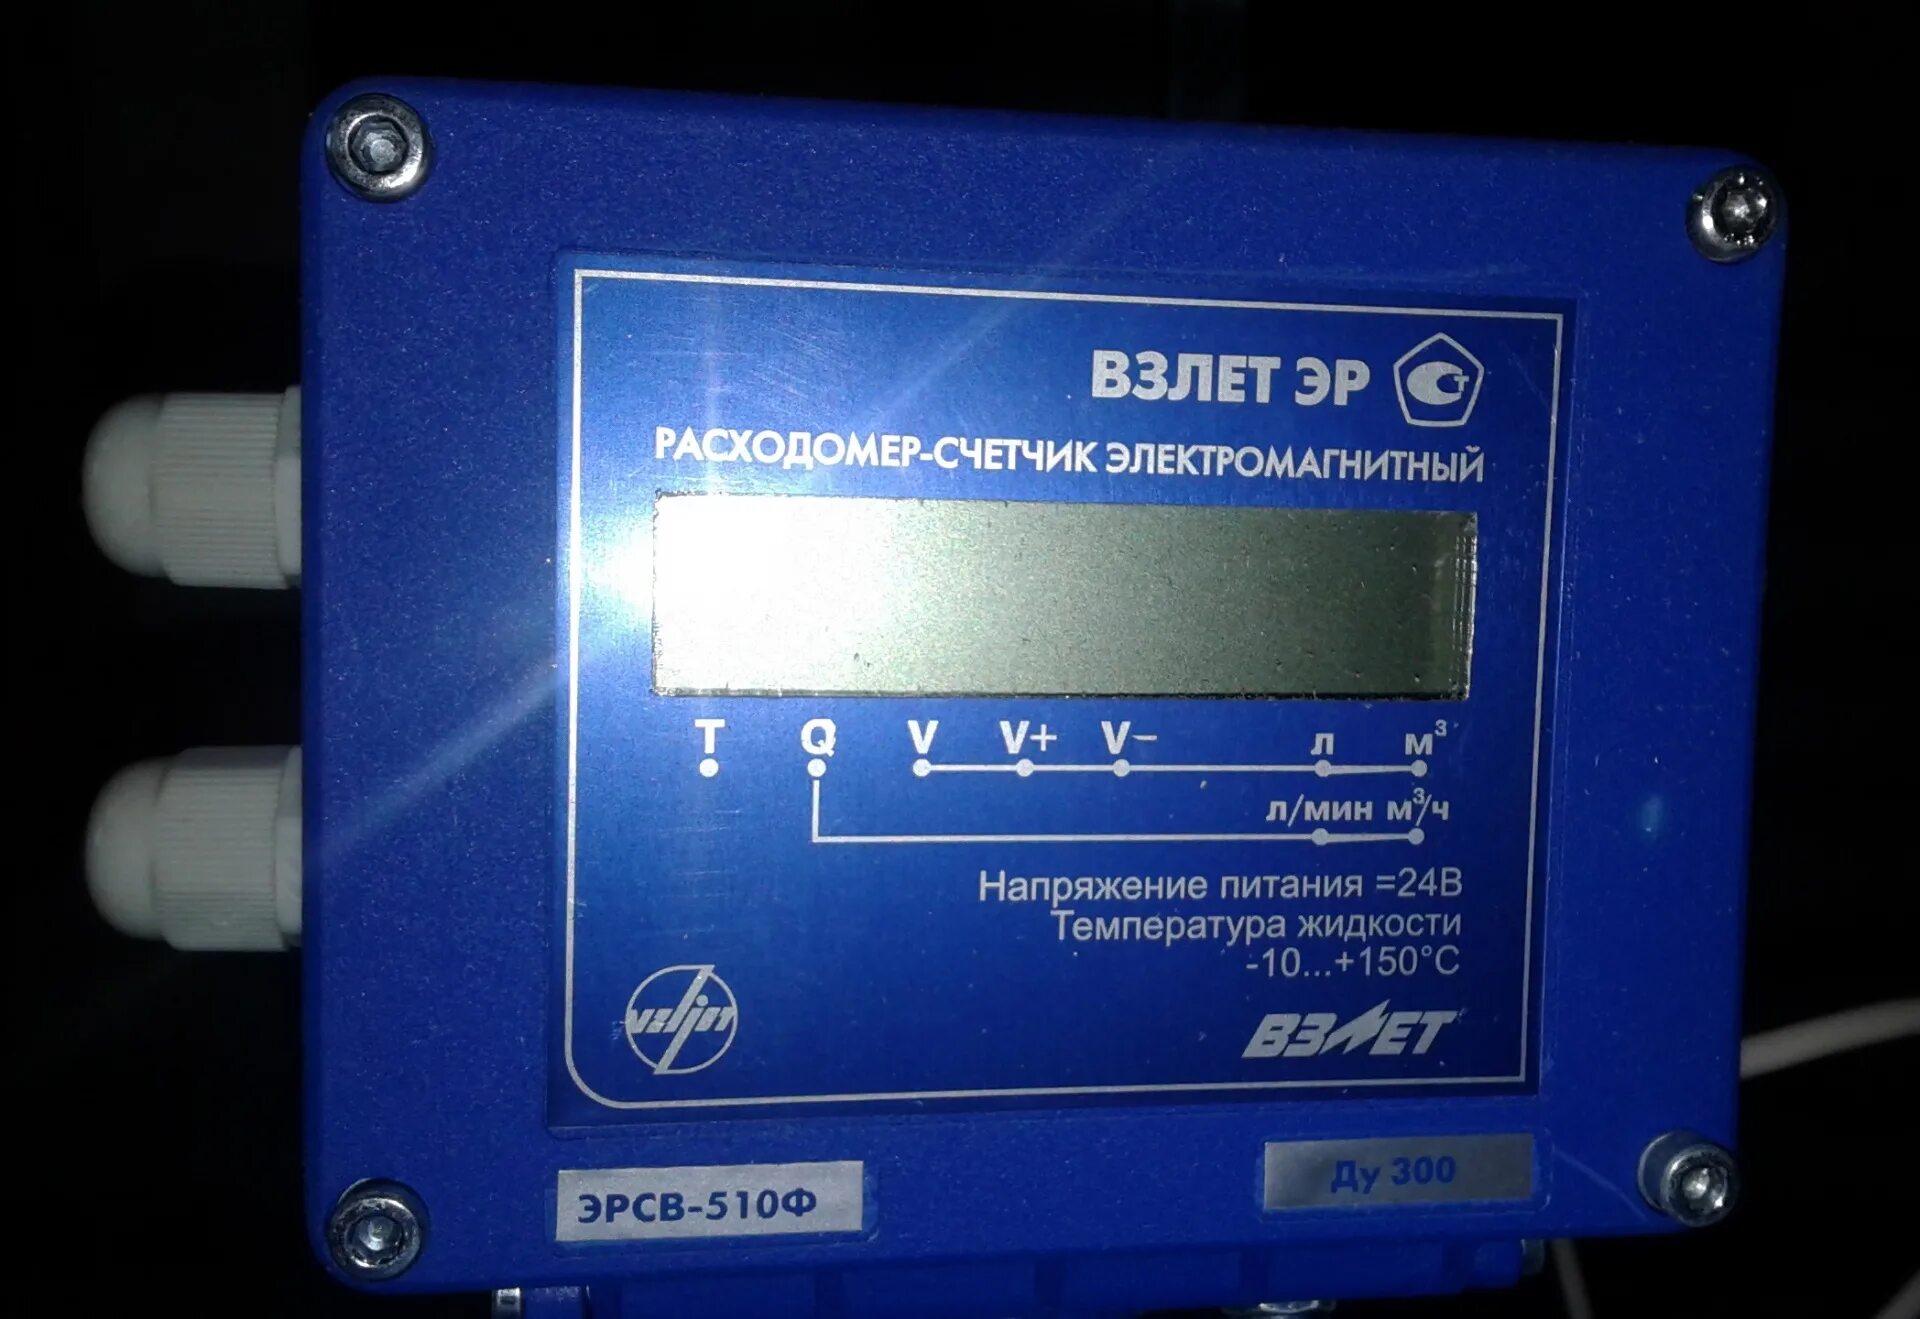 Расходомер-счетчик электромагнитный взлет 440л. Расходомер-счетчик электромагнитный взлет Эр ЭРСВ-520л. Расходомер взлет ЭРСВ 520.